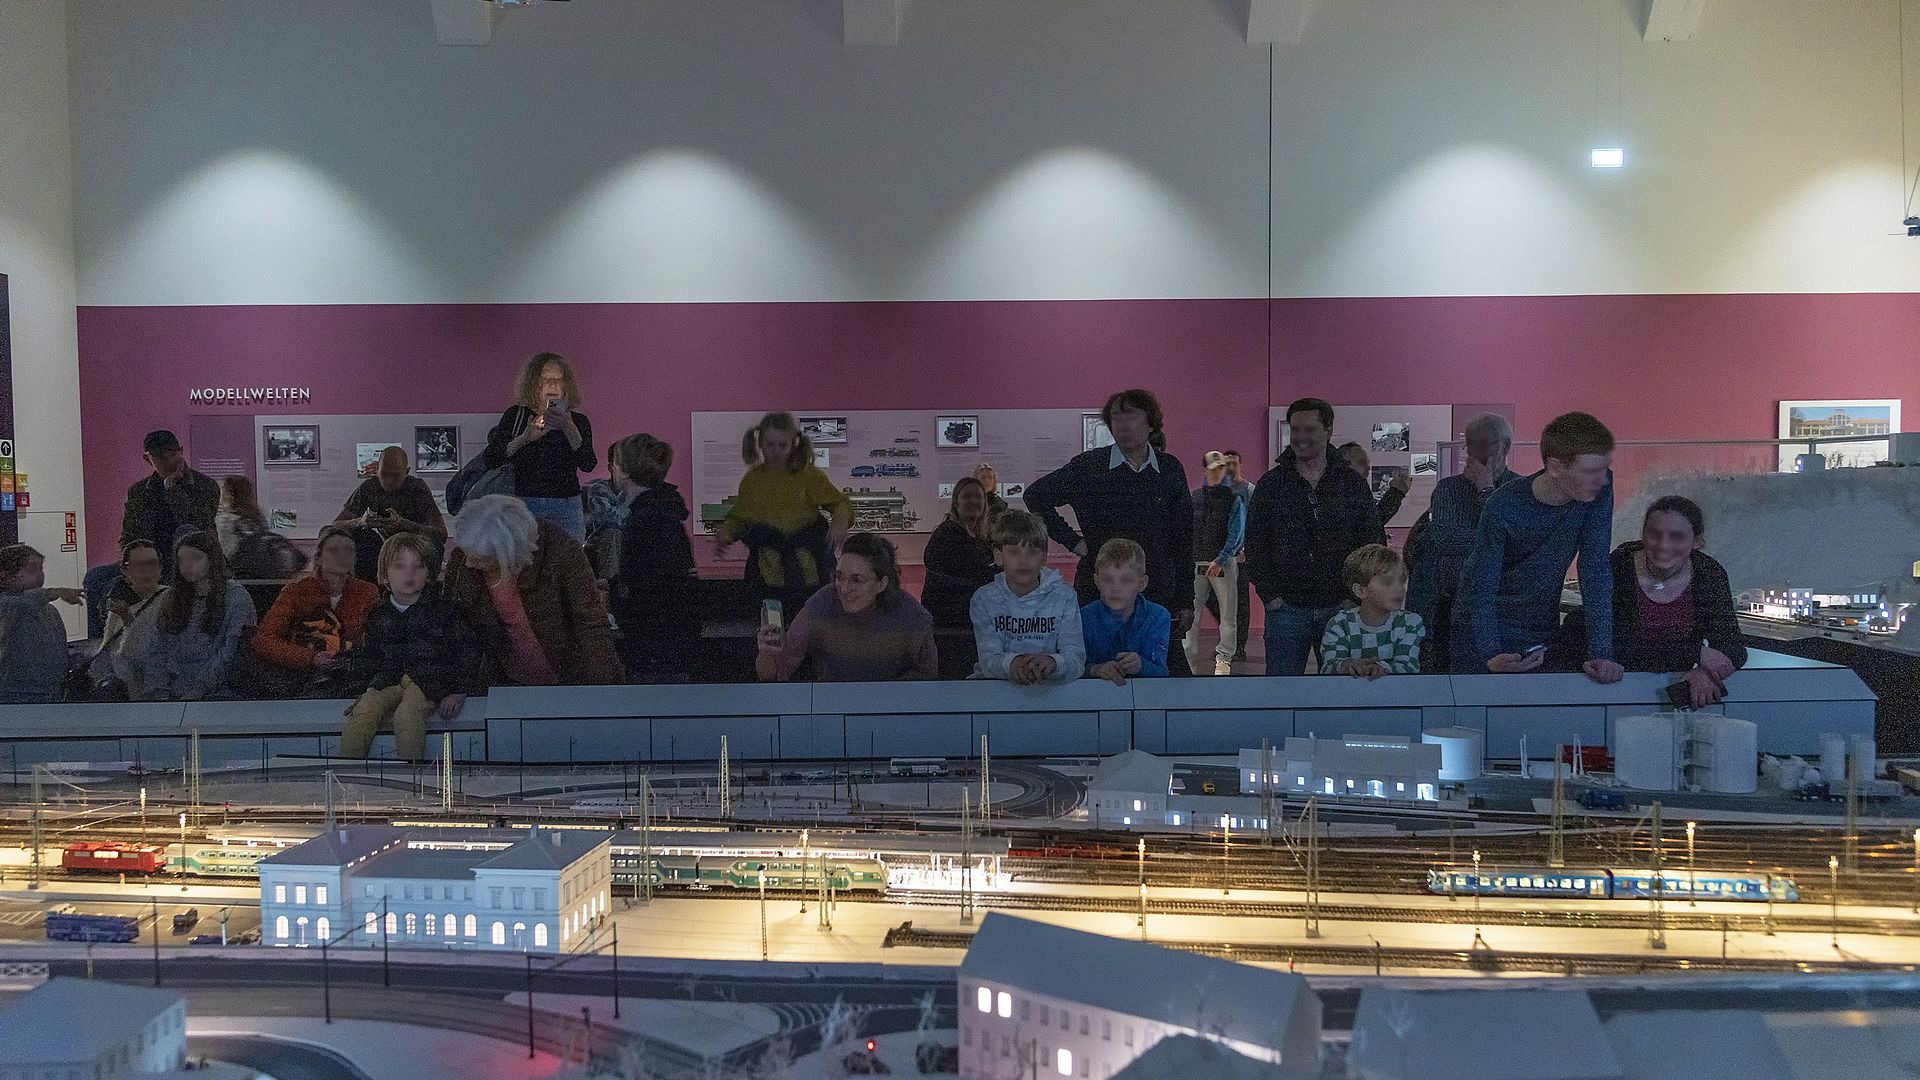 Besucherinnen und Besucher schauen gespannt die Vorführung der Modellbahnanlage an.